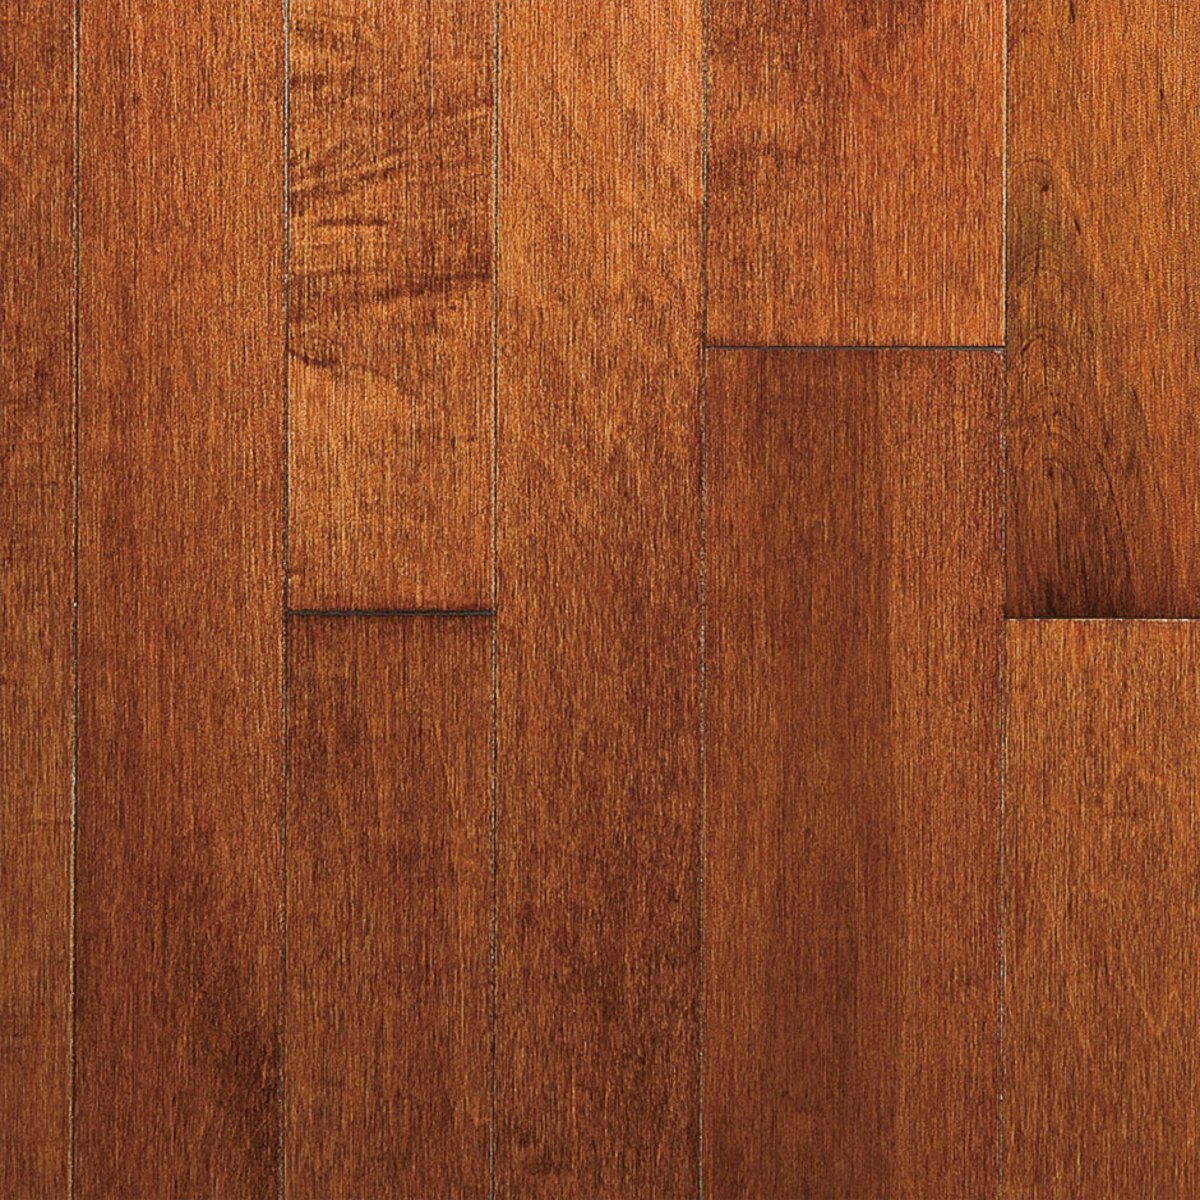 Canadian Hard Maple Vine 4 1, Beasley Hardwood Flooring Reviews